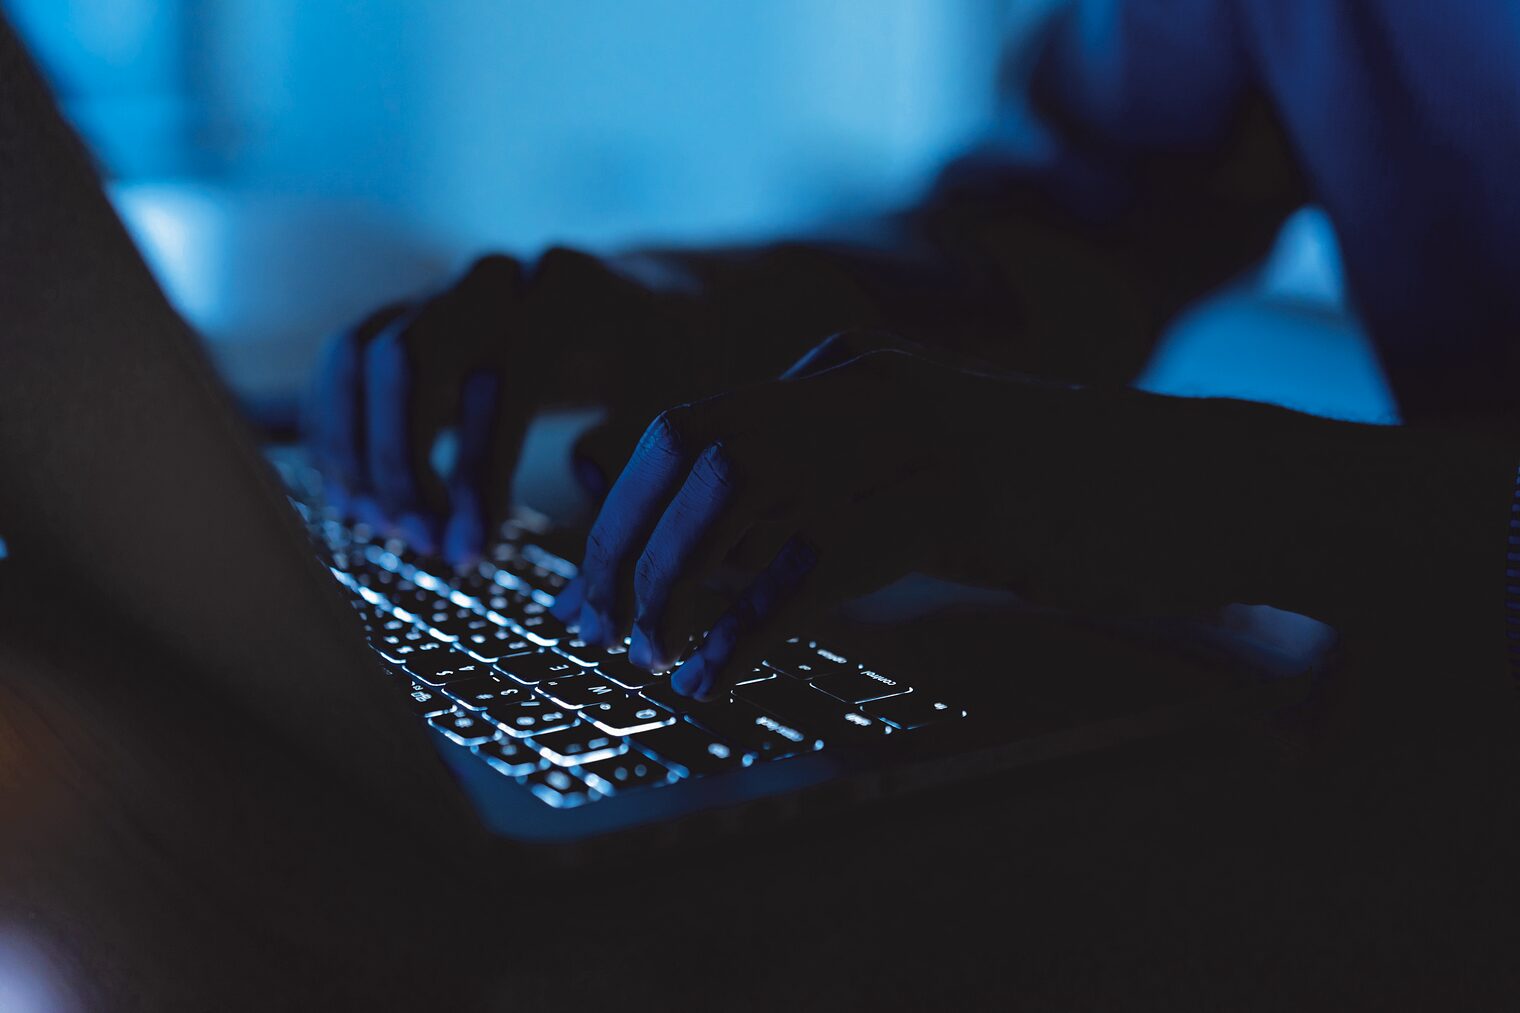 Symbolbild: Cyber-Angriff: Hände an einem Laptop in einem abgedunkelten Raum